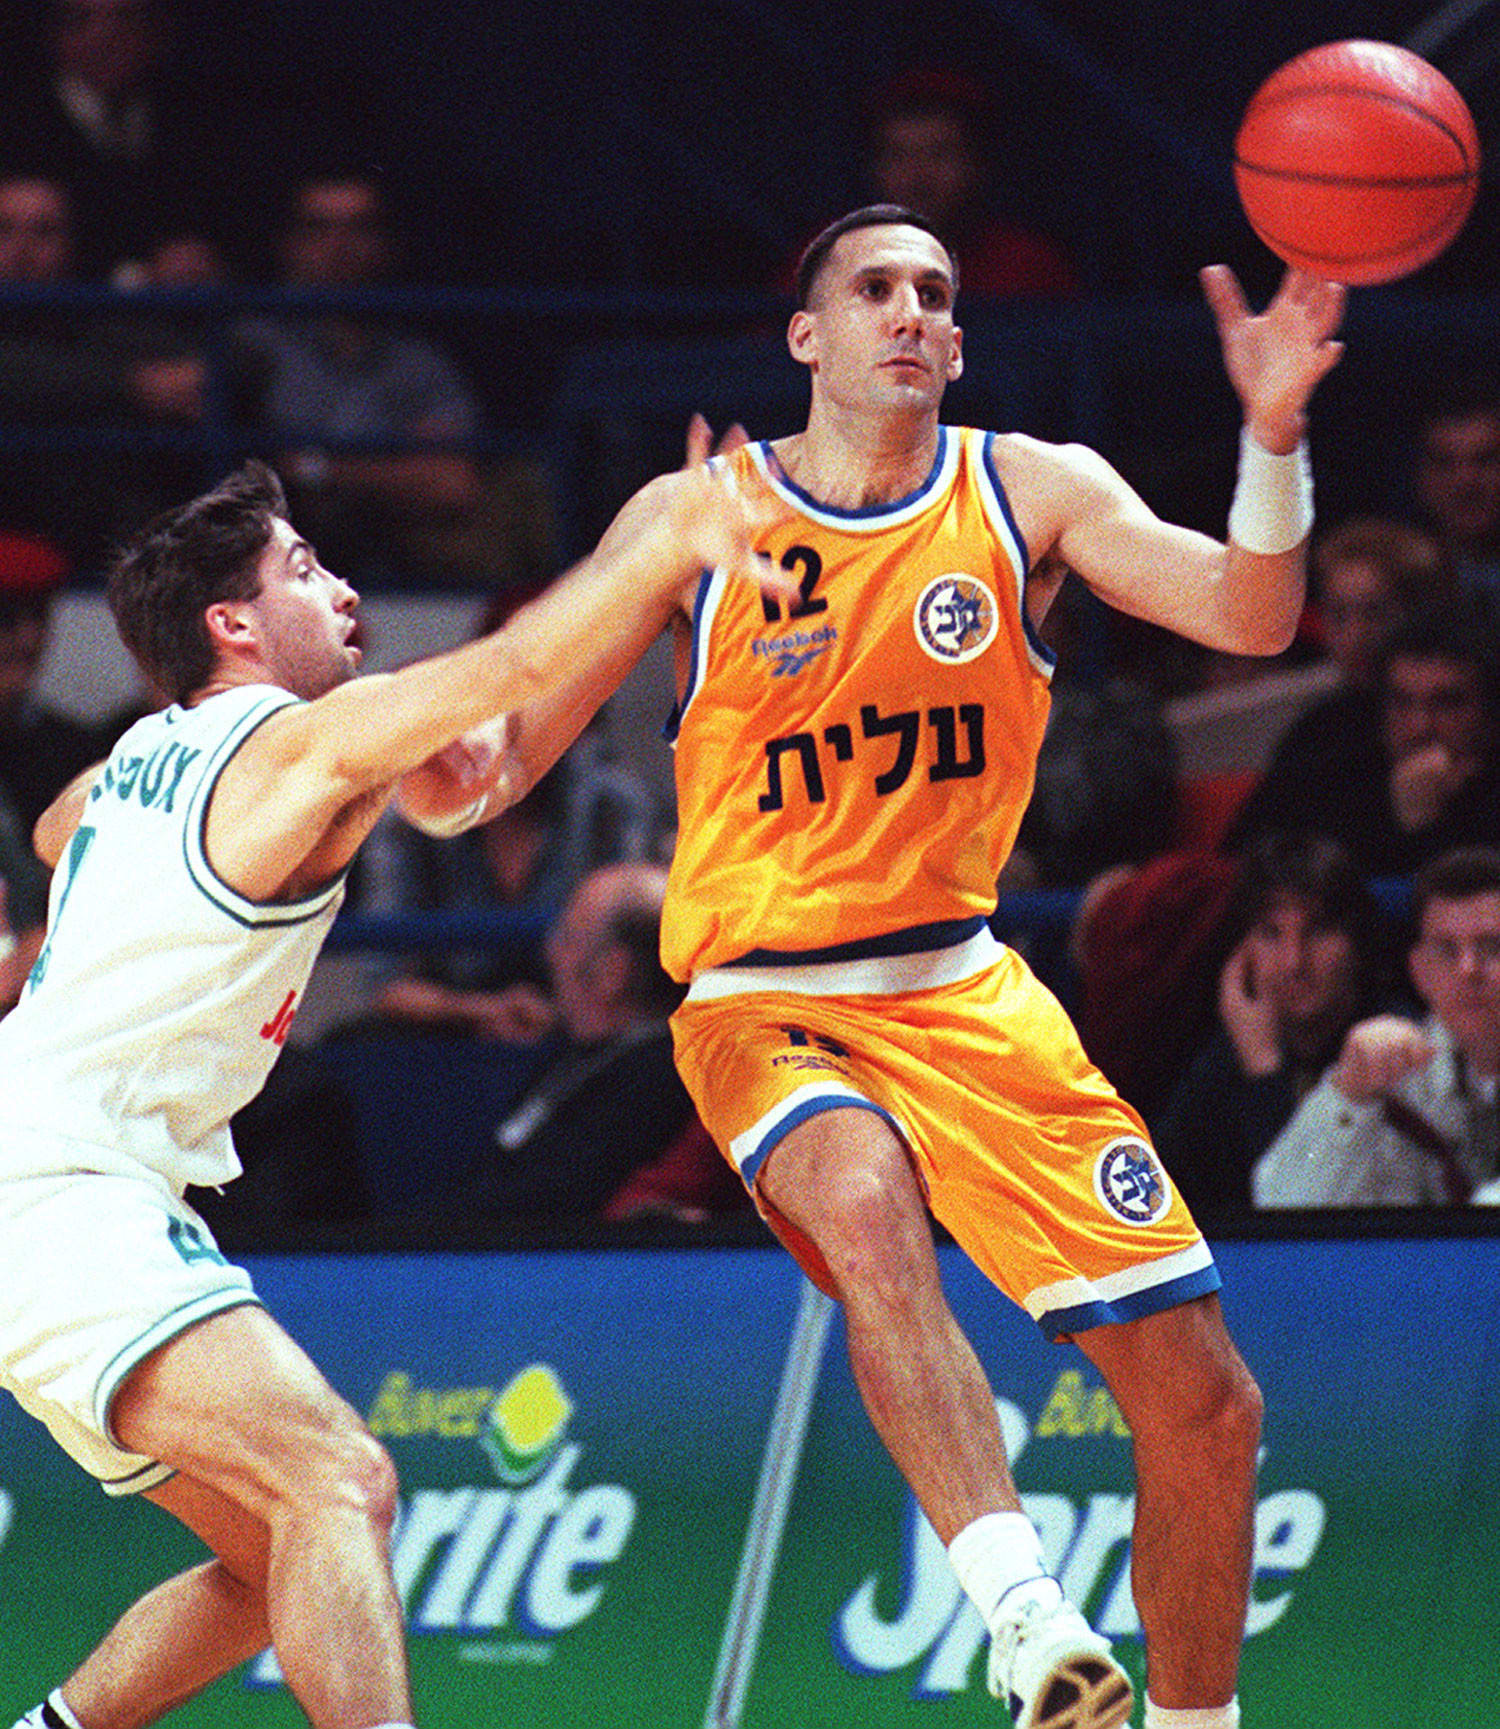 שחקן מכבי תל אביב ב-1996, דורון ג'מצ'י, מול שחקן פו אורטז, פרדריק פוטו